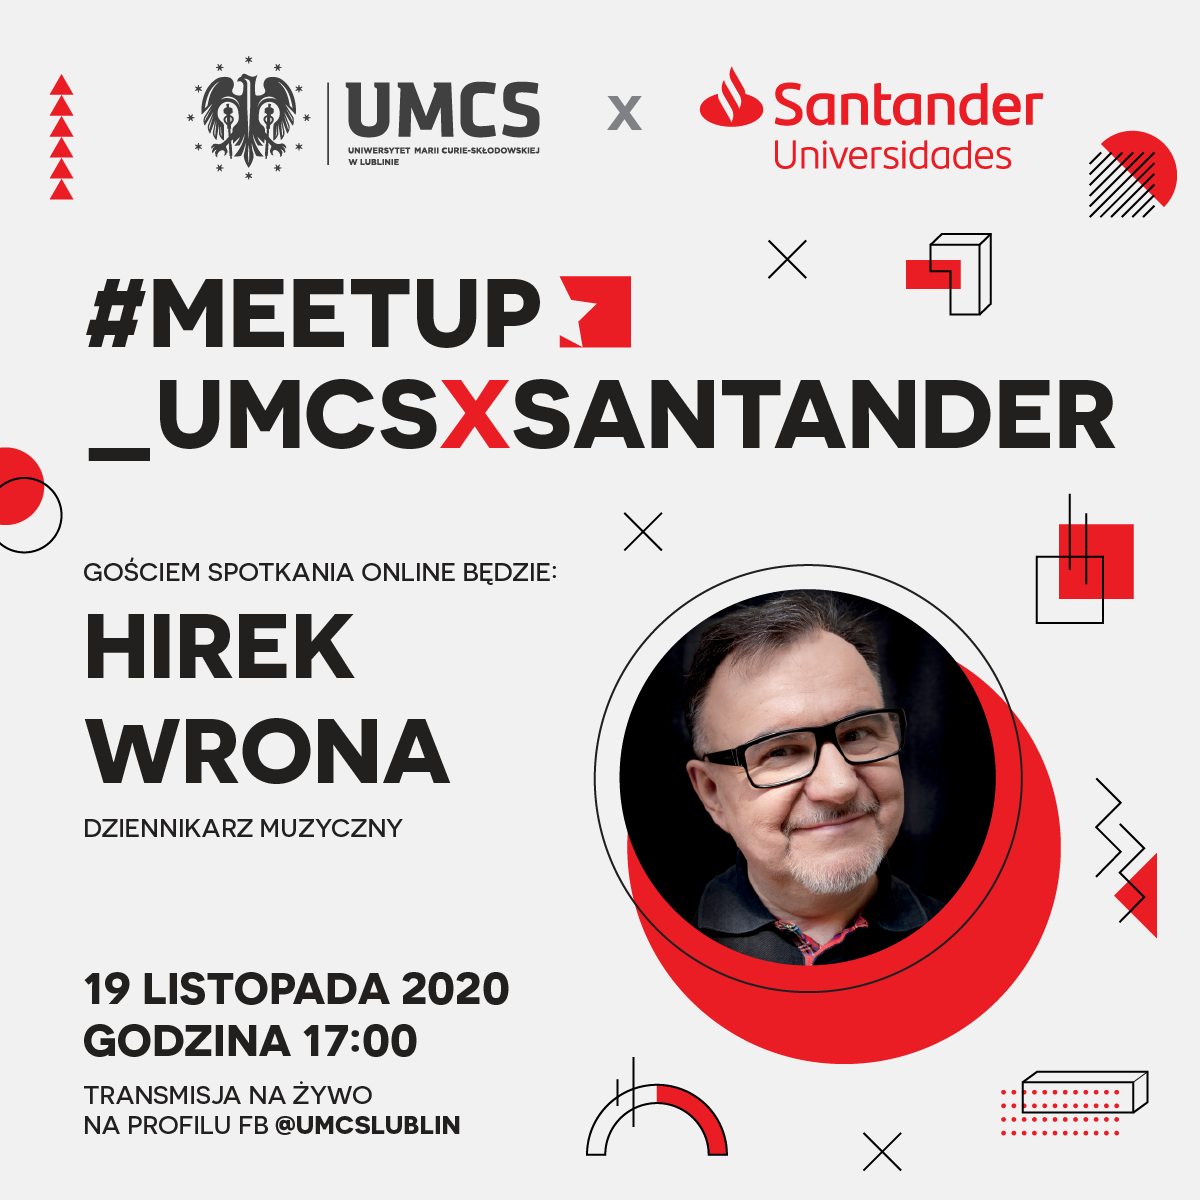 Hirek Wrona gościem spotkania #meetup_UMCSxSantander w Lublinie - Zdjęcie główne